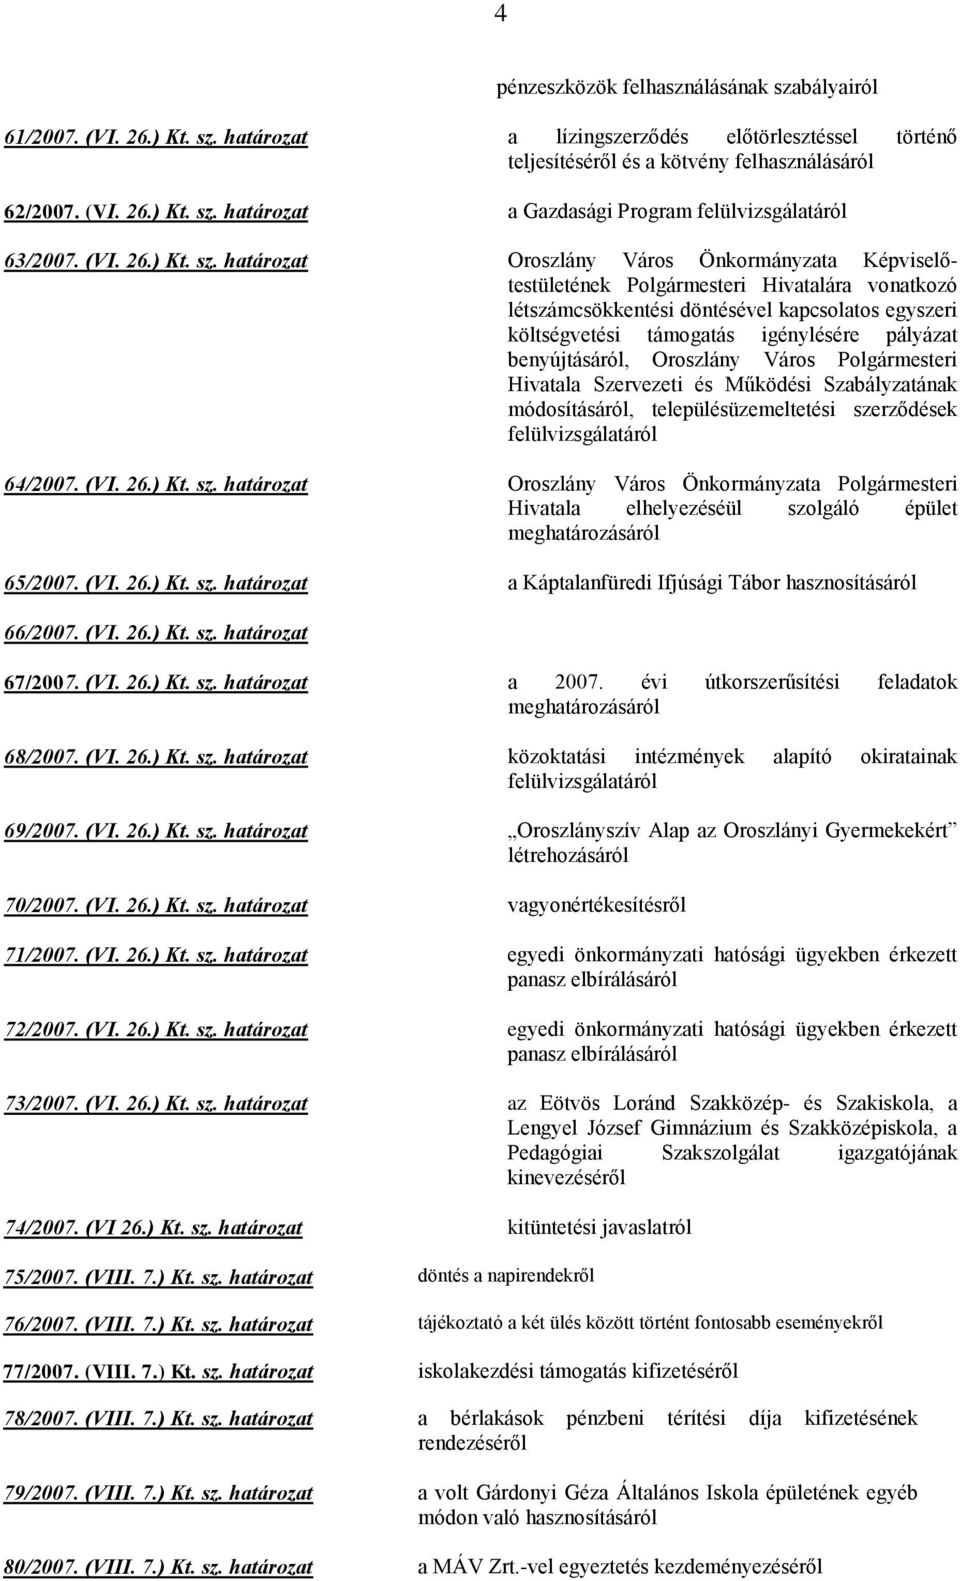 határozat Oroszlány Város Önkormányzata Képviselőtestületének Polgármesteri Hivatalára vonatkozó létszámcsökkentési döntésével kapcsolatos egyszeri költségvetési támogatás igénylésére pályázat